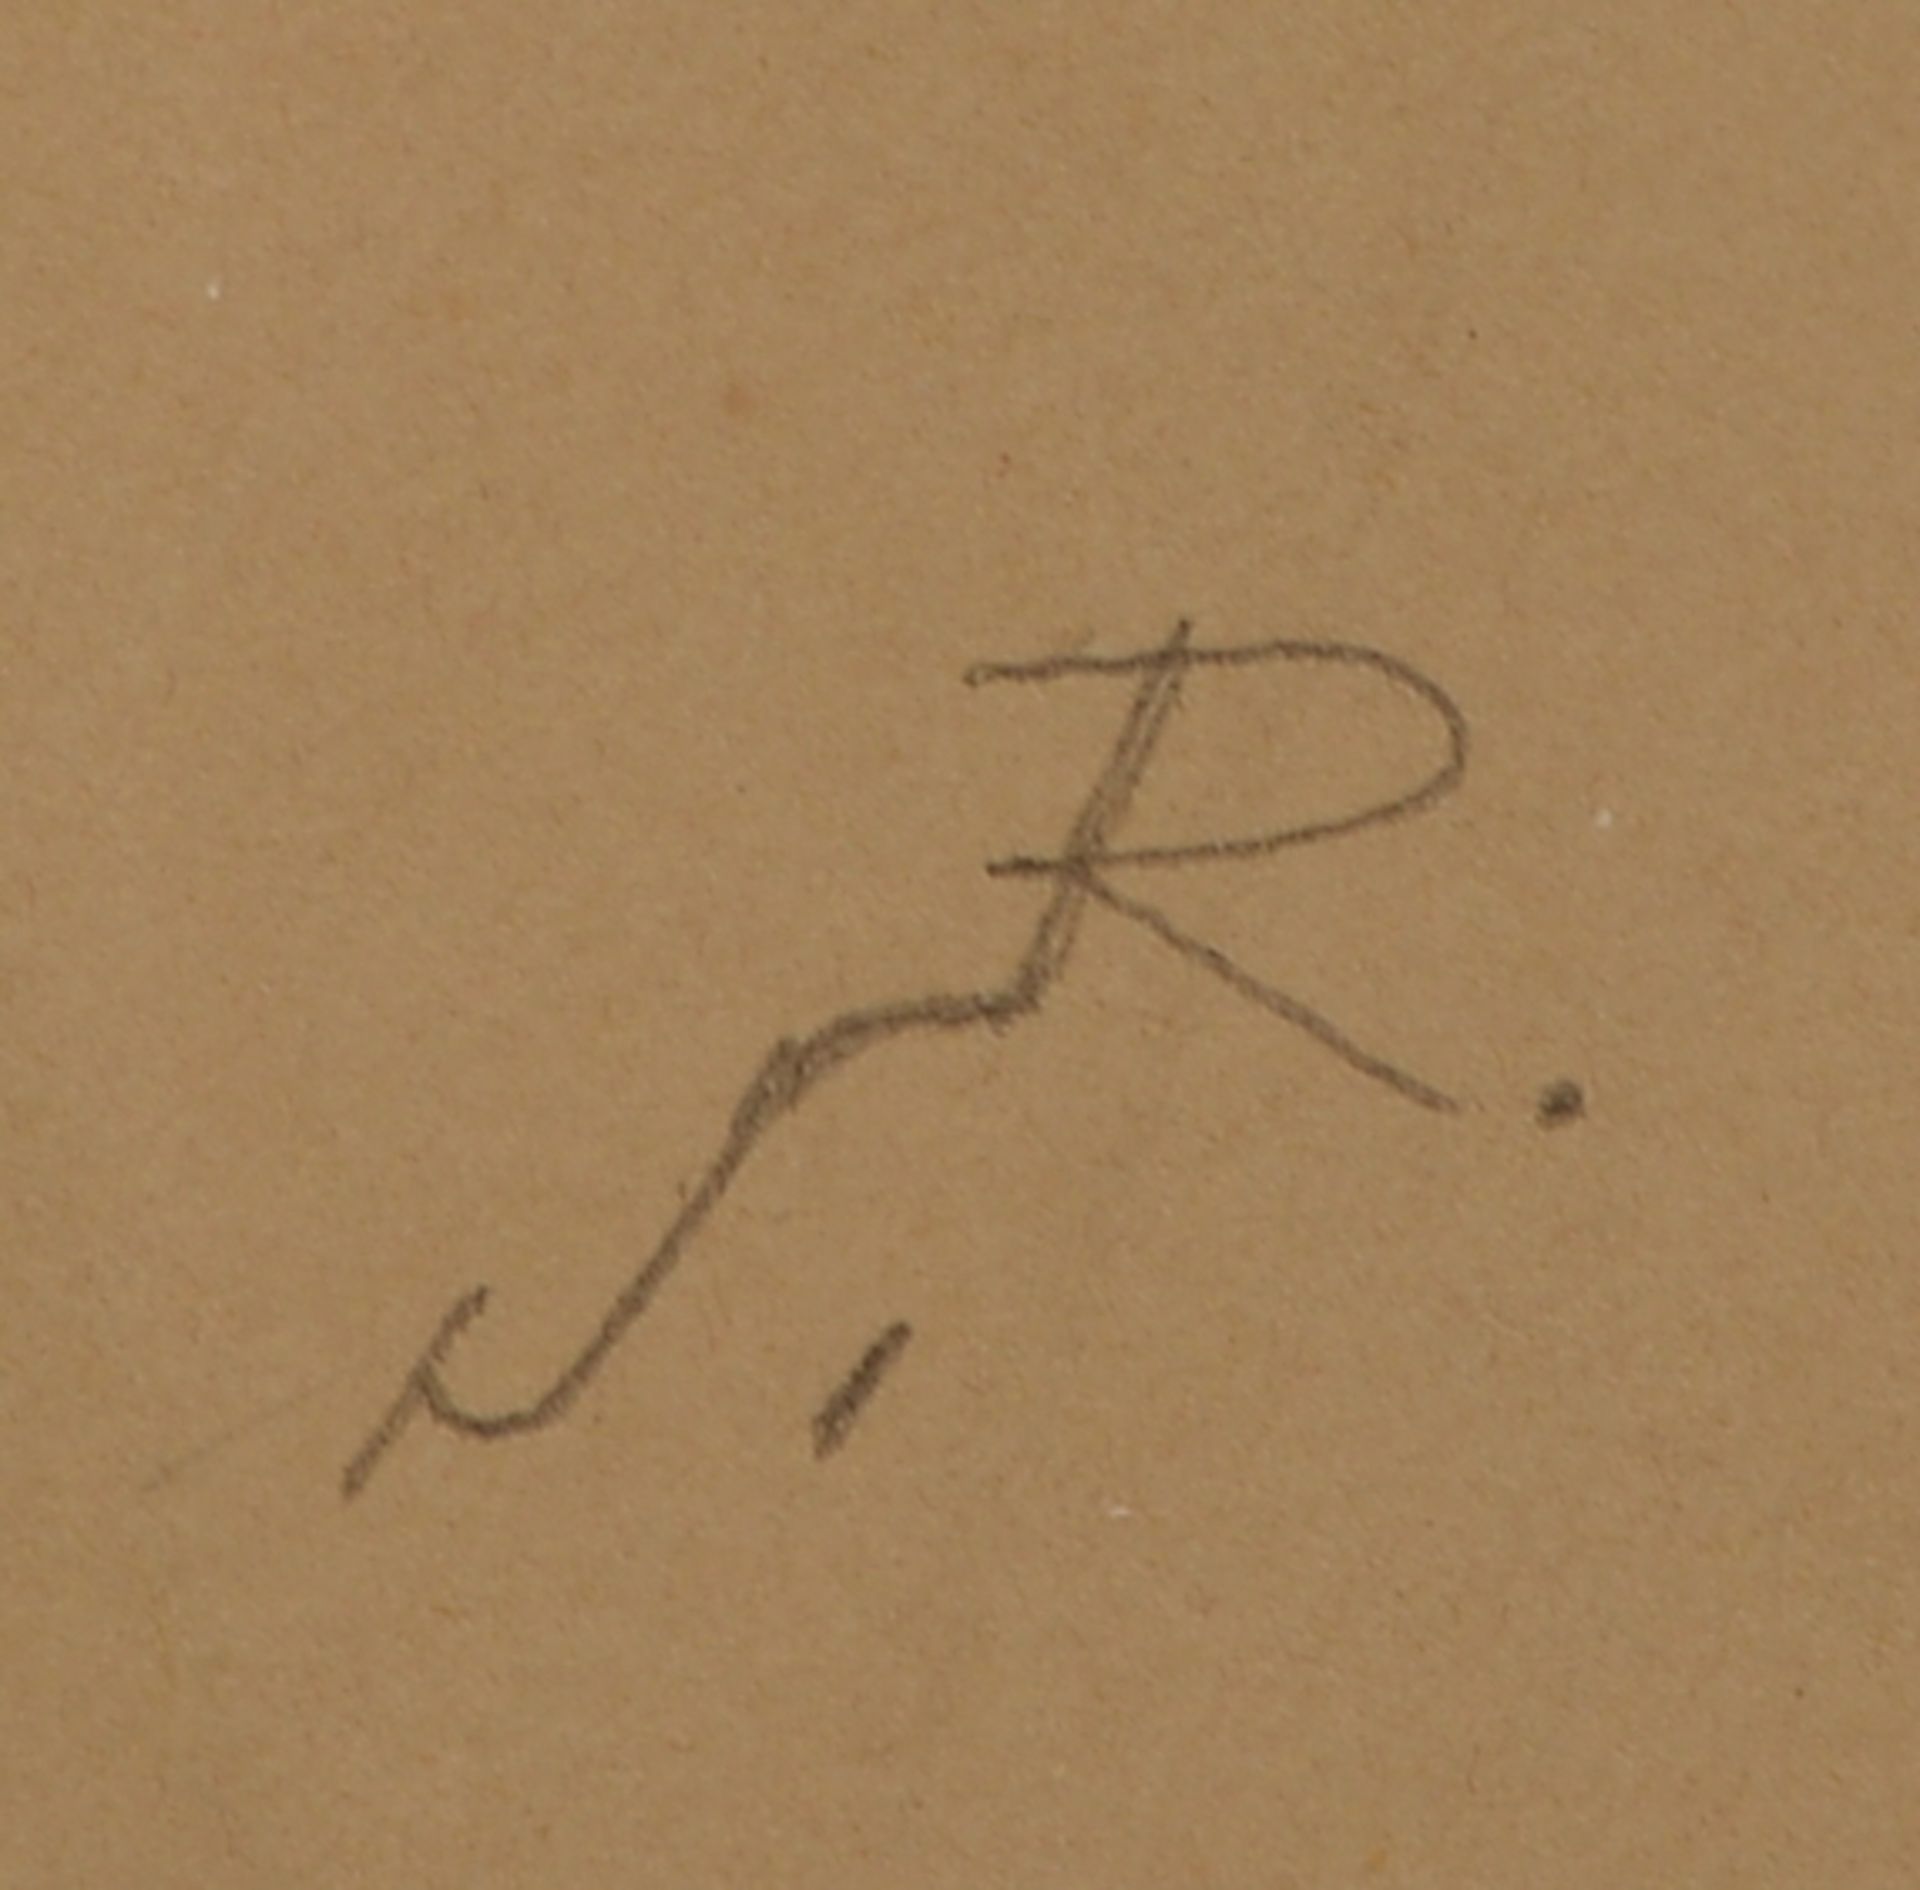 Sörmann, Reinhold (Hamburg), 'Rhododendronblüten', Bleistiftzeichnung, im Blatt monogrammiert 'R.S.' - Bild 2 aus 2